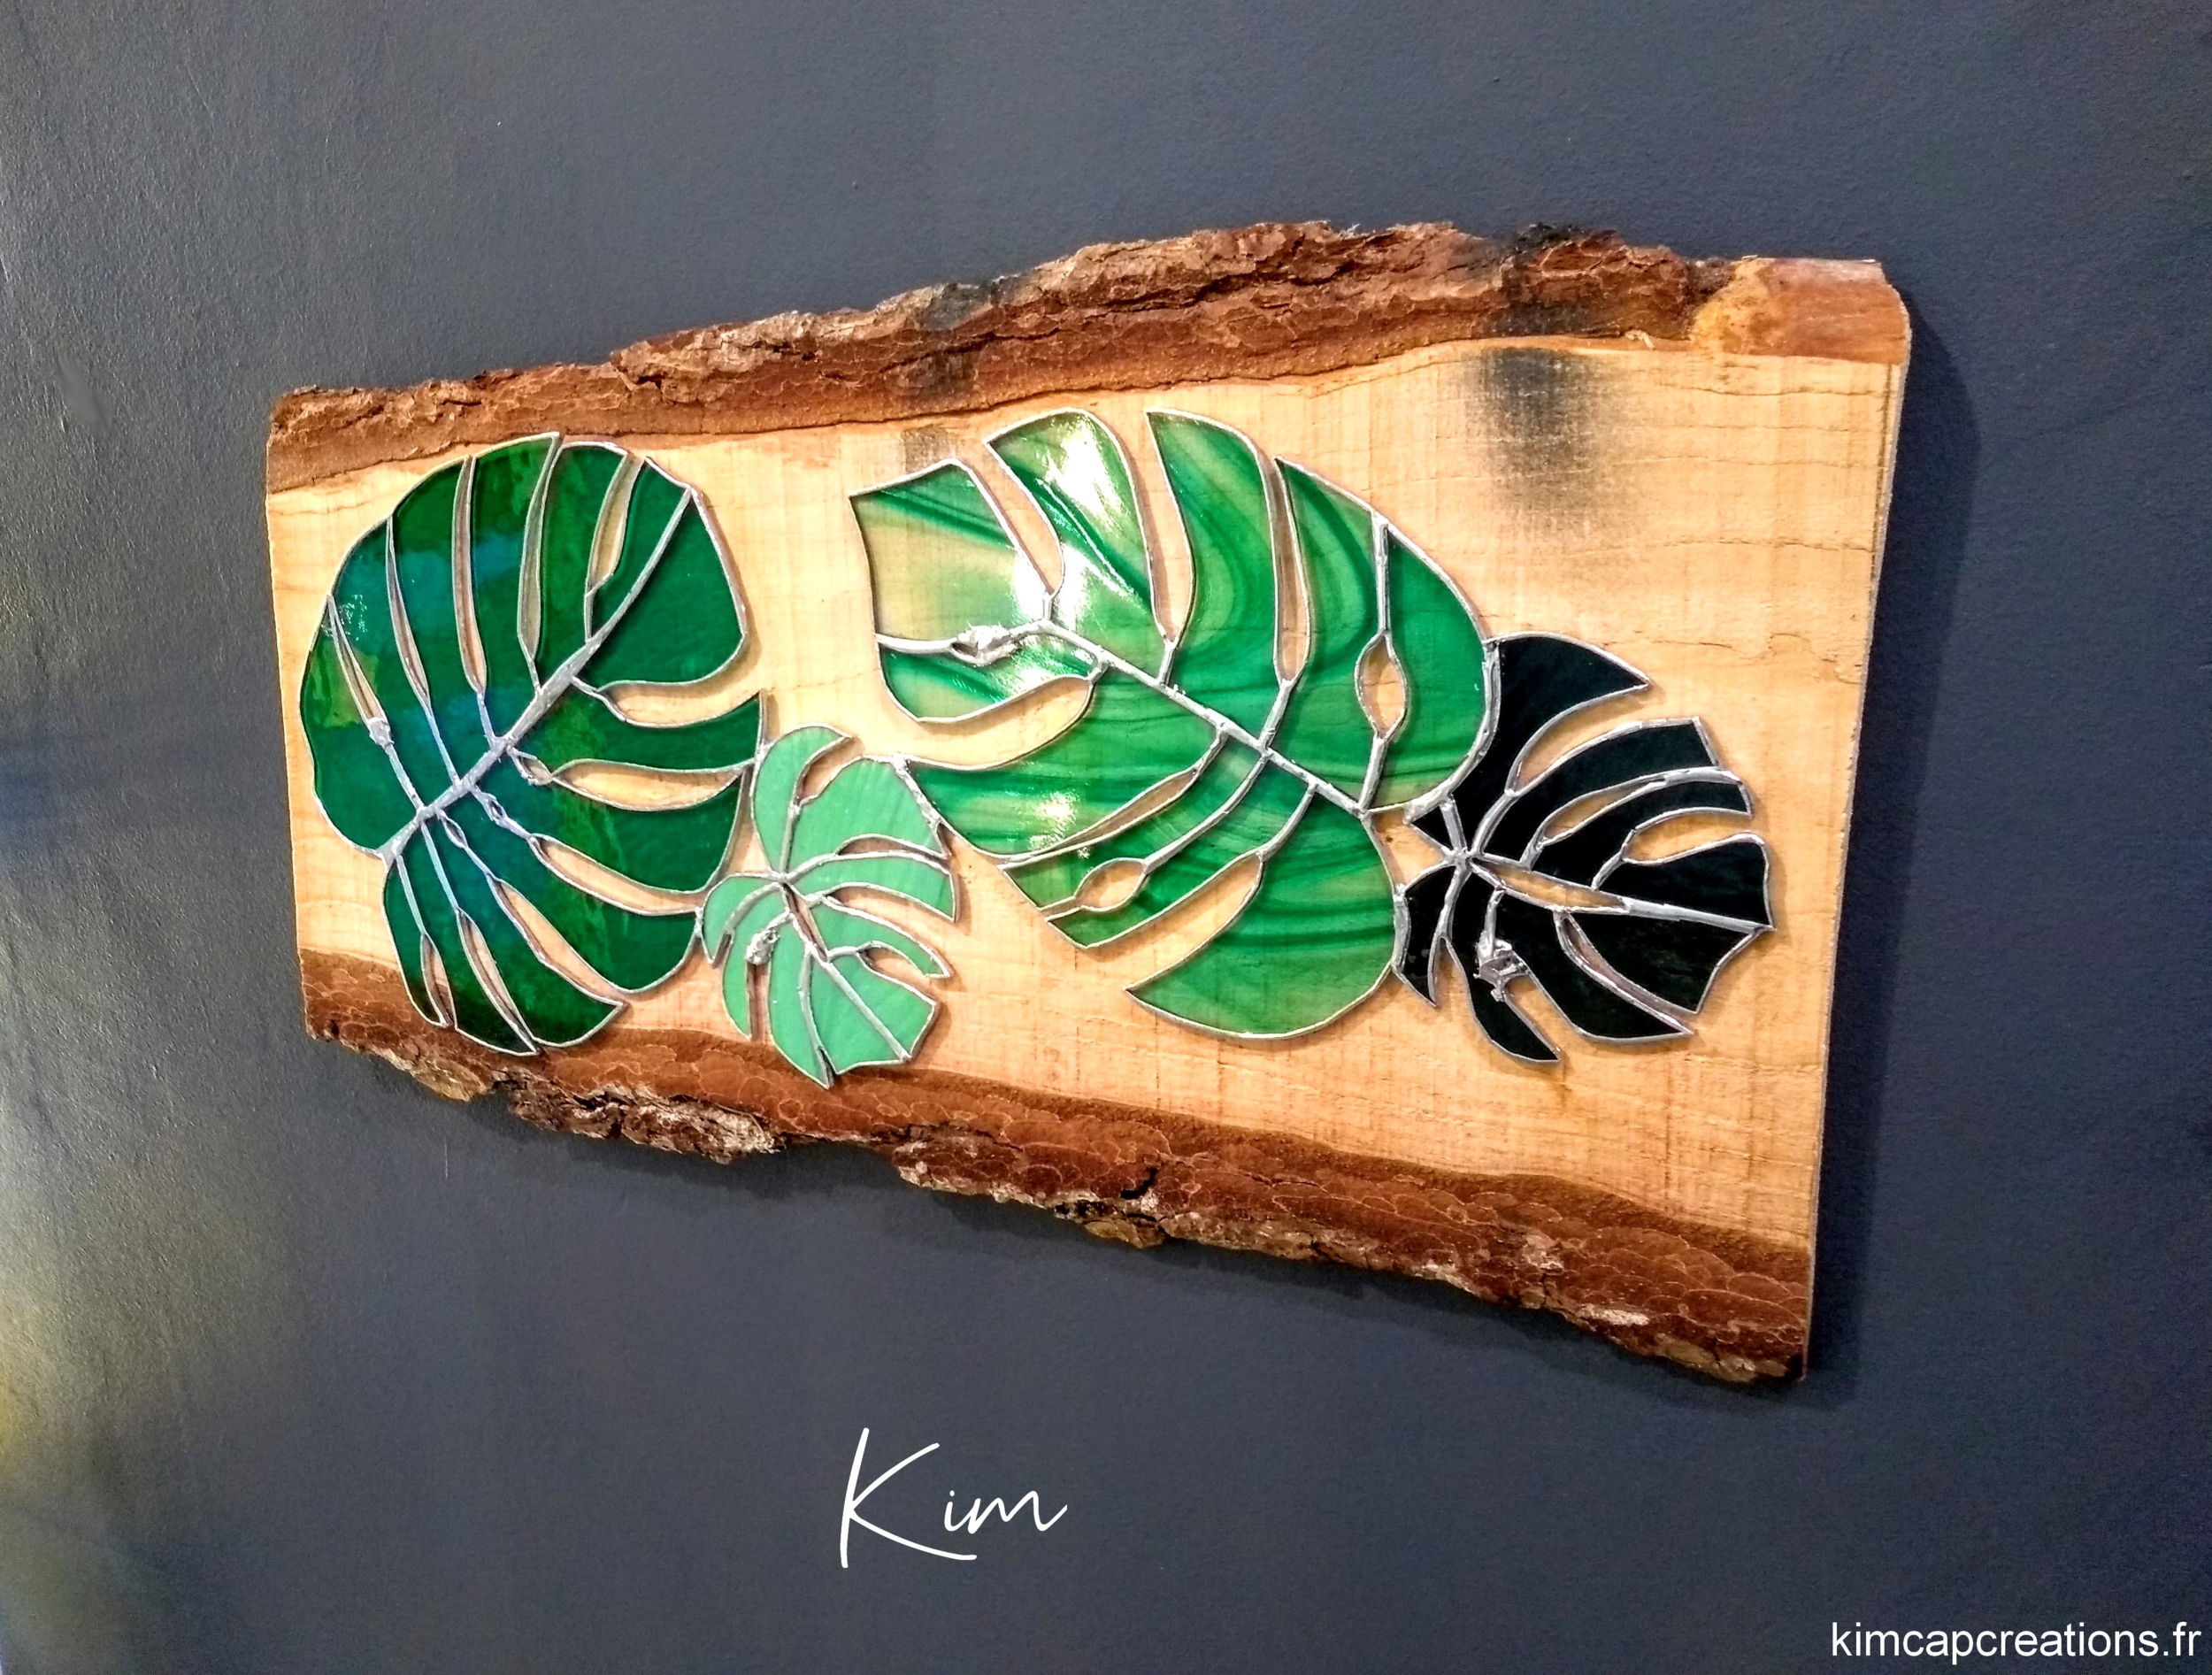 tableau, décoration murale greenlife en vitrail feuille tropicale VKC008c_210€